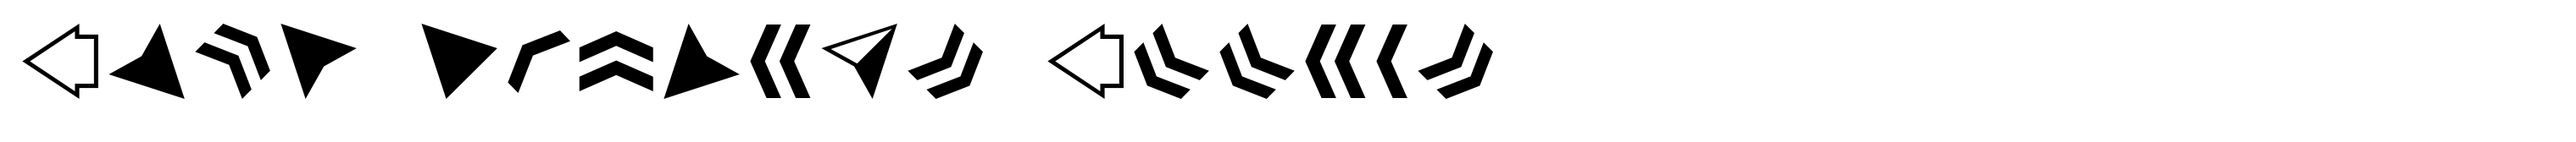 Acta Symbols Arrows